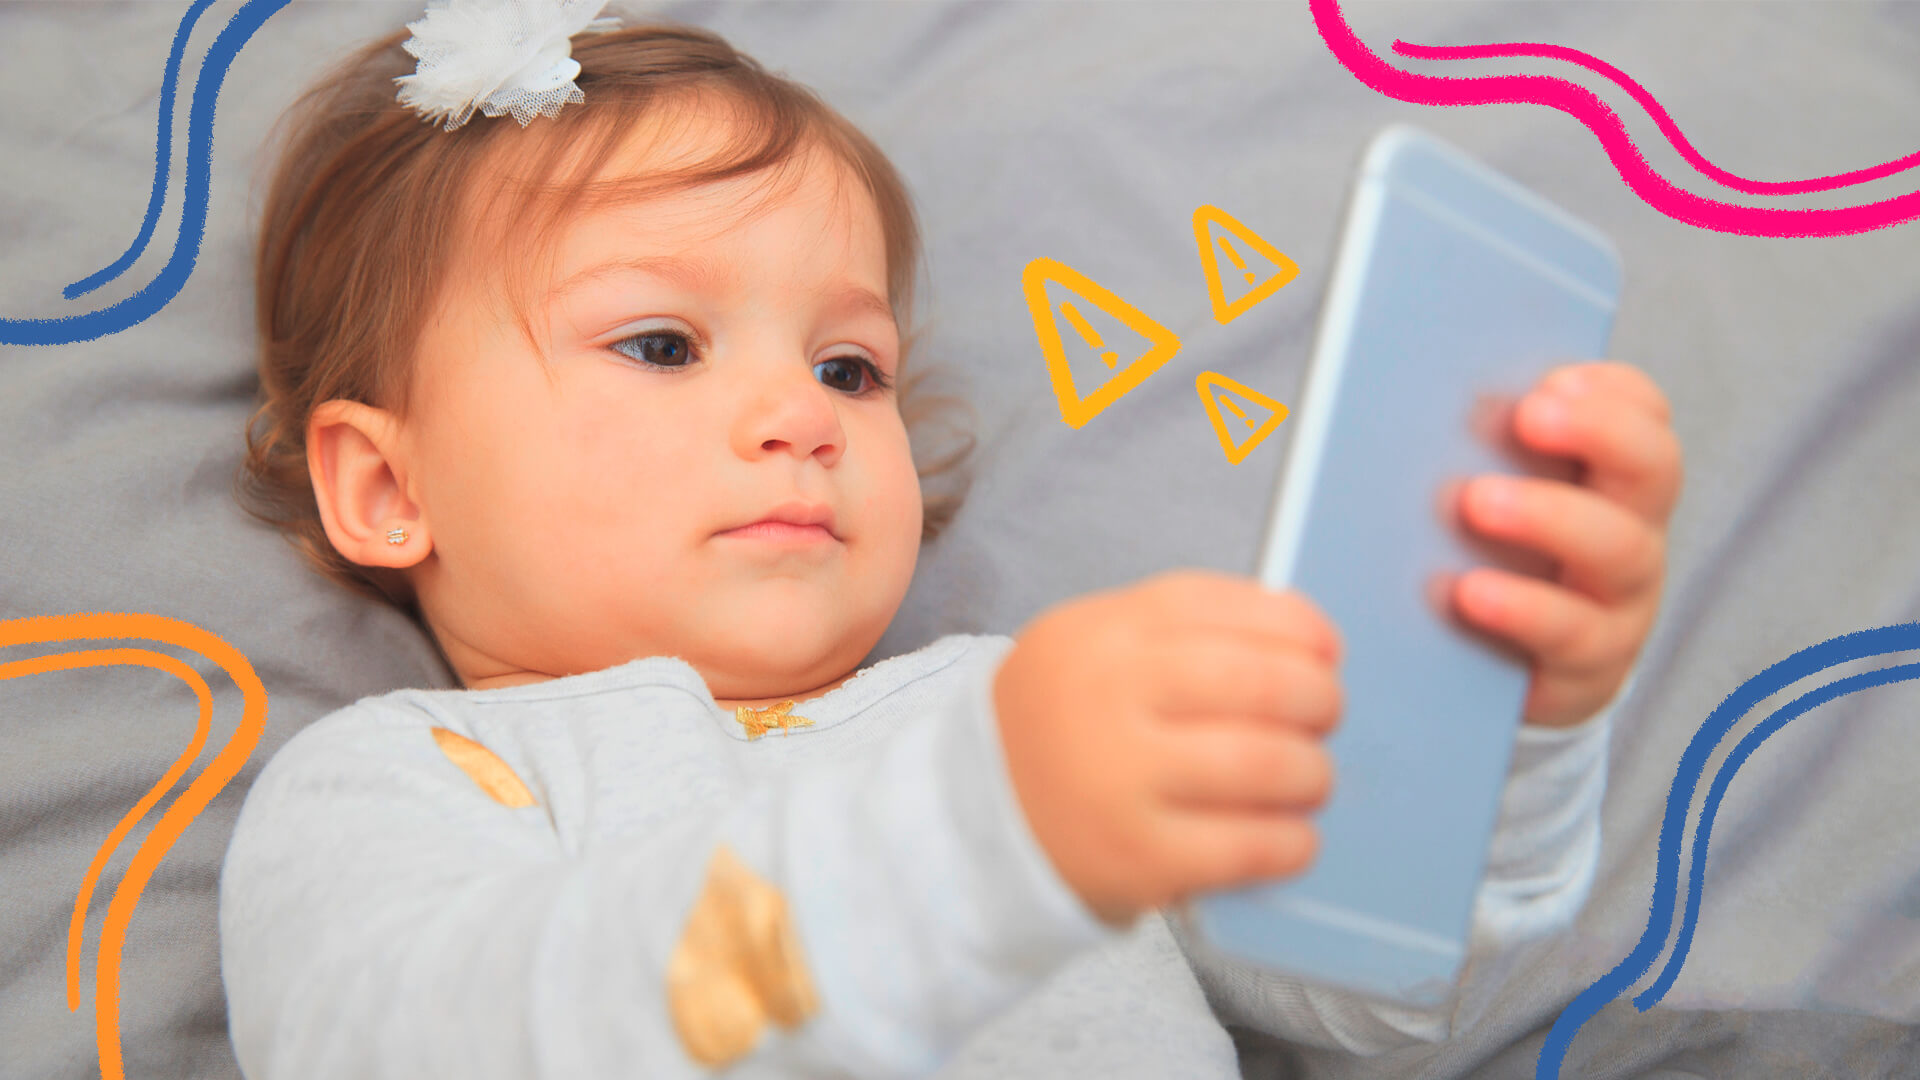 Uma menina branca olha para a tela de um telefone celular que segura em mãos. A imagem ilustra uma matéria sobre tempo de tela.